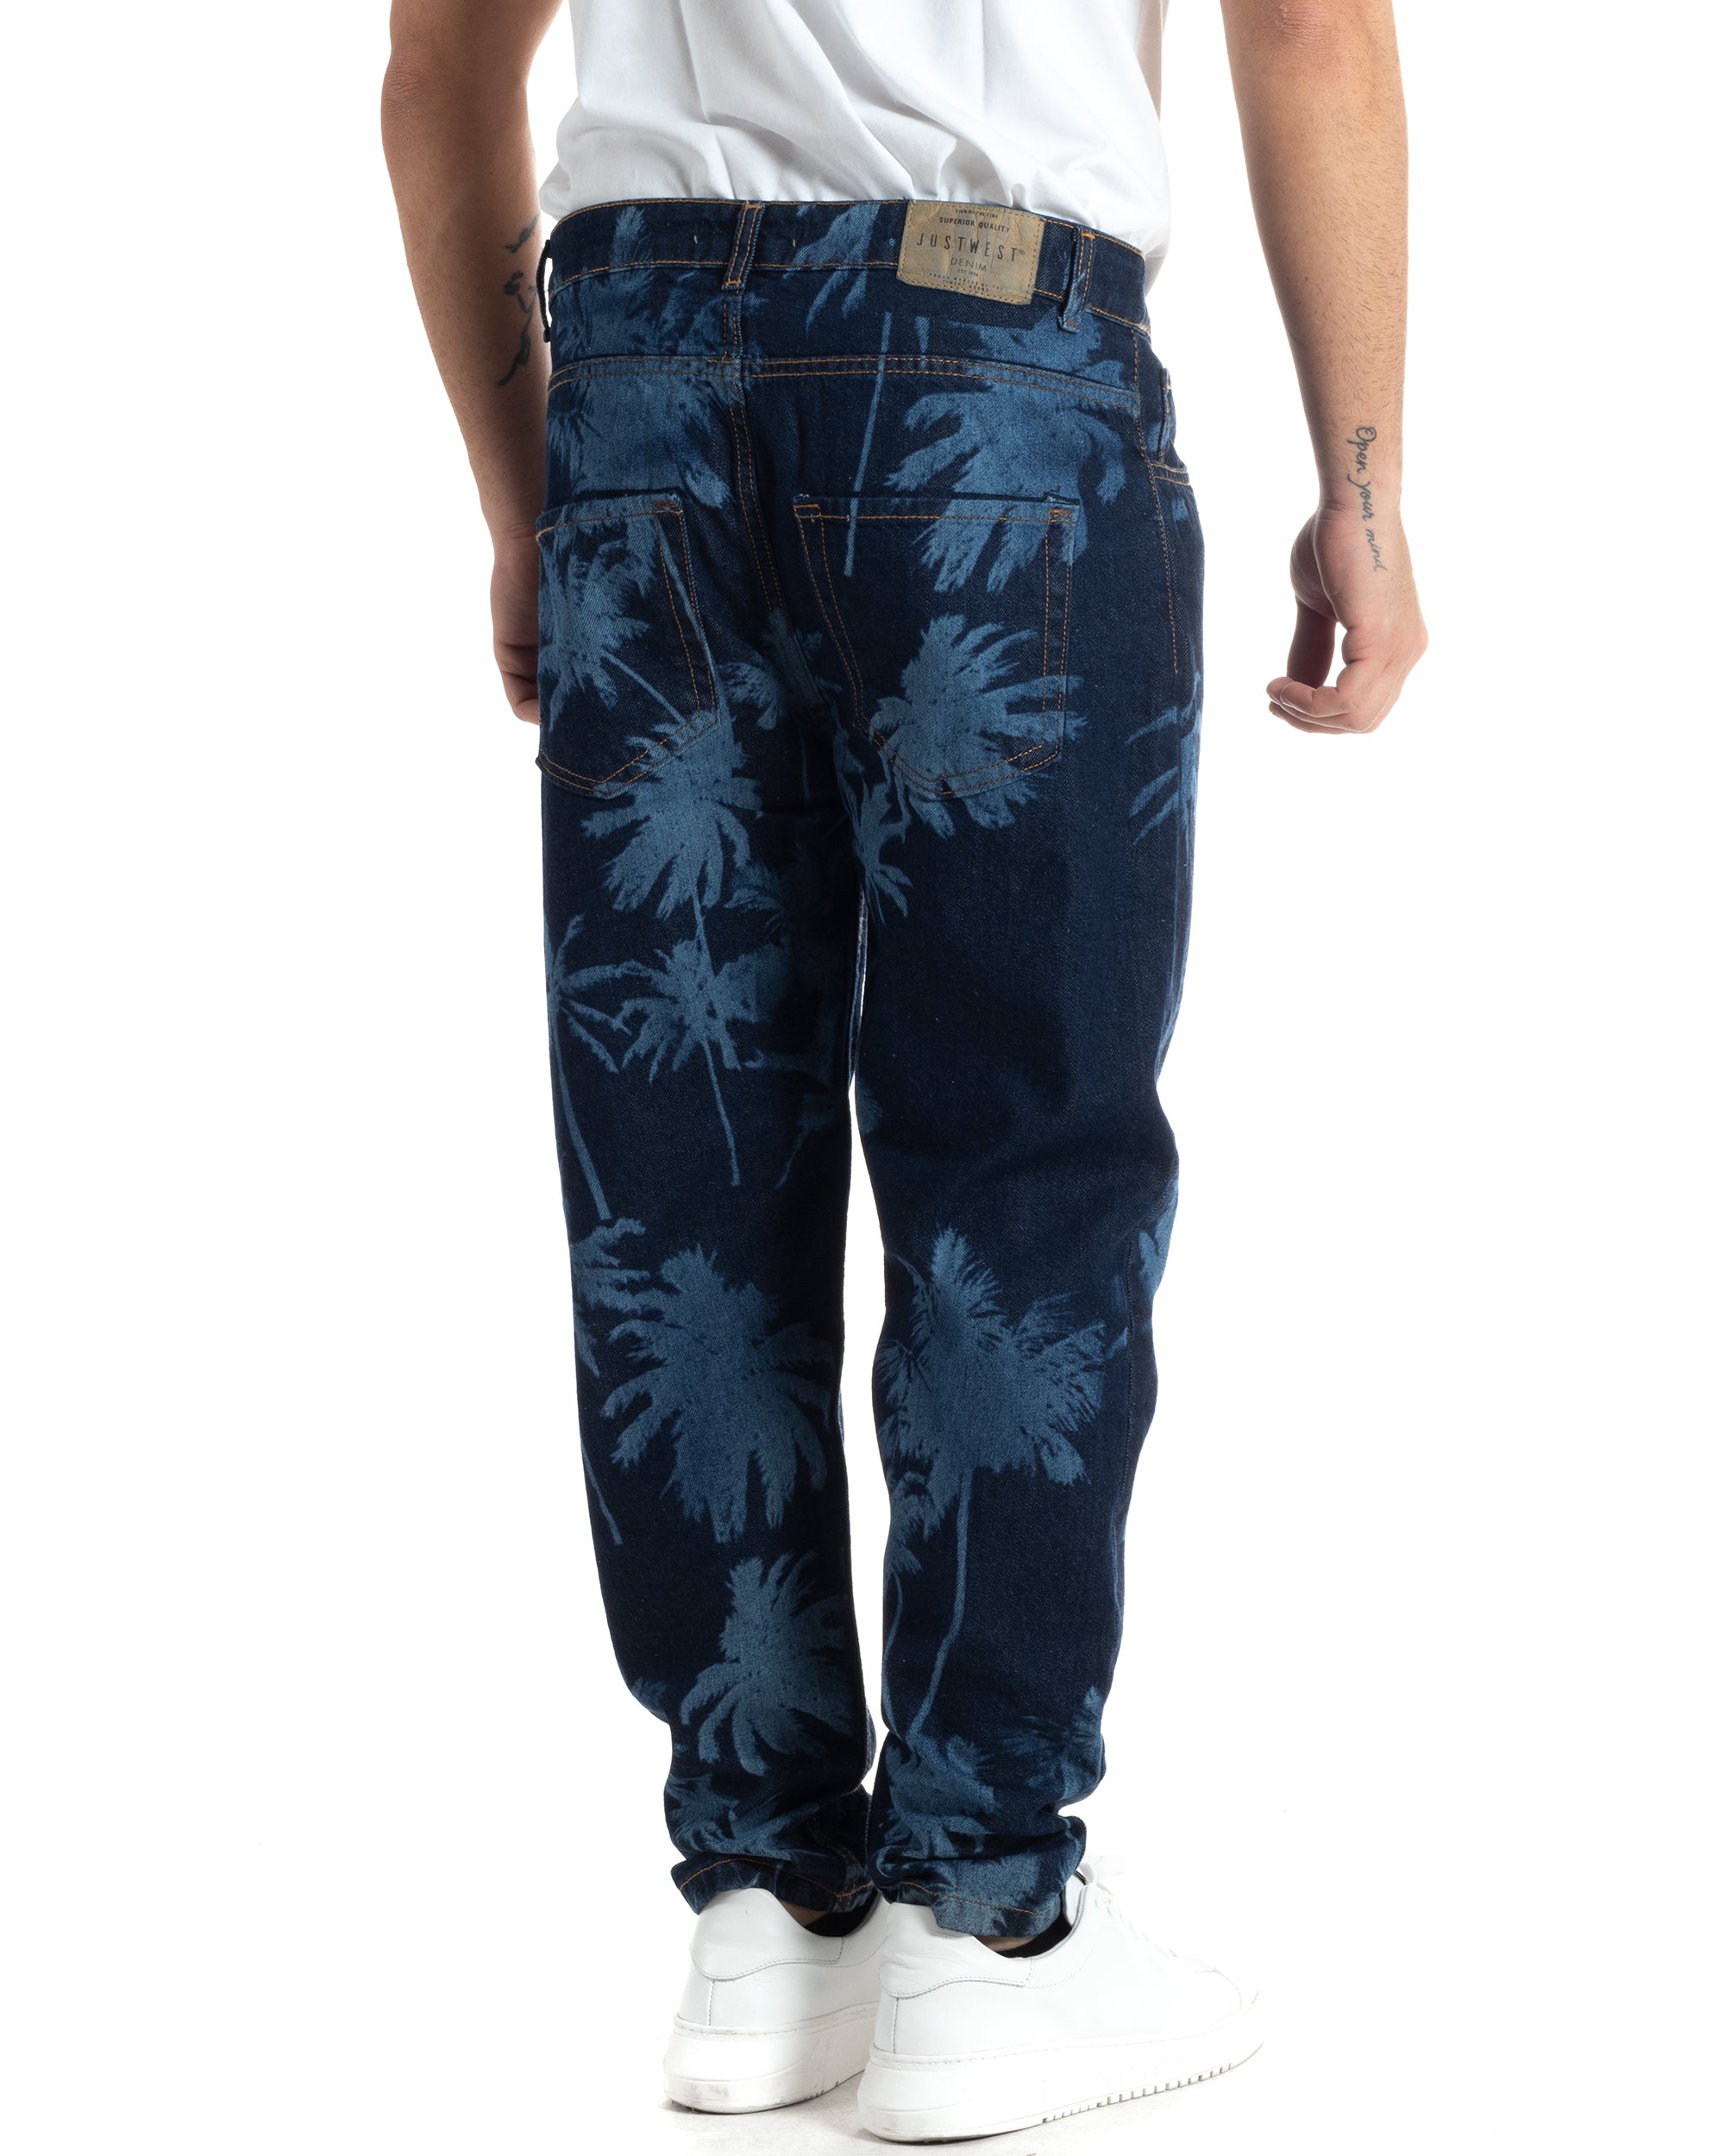 Pantaloni Jeans Uomo Loose Fit Denim Scuro Stampa Laser Stonewashed GIOSAL-JS1004A